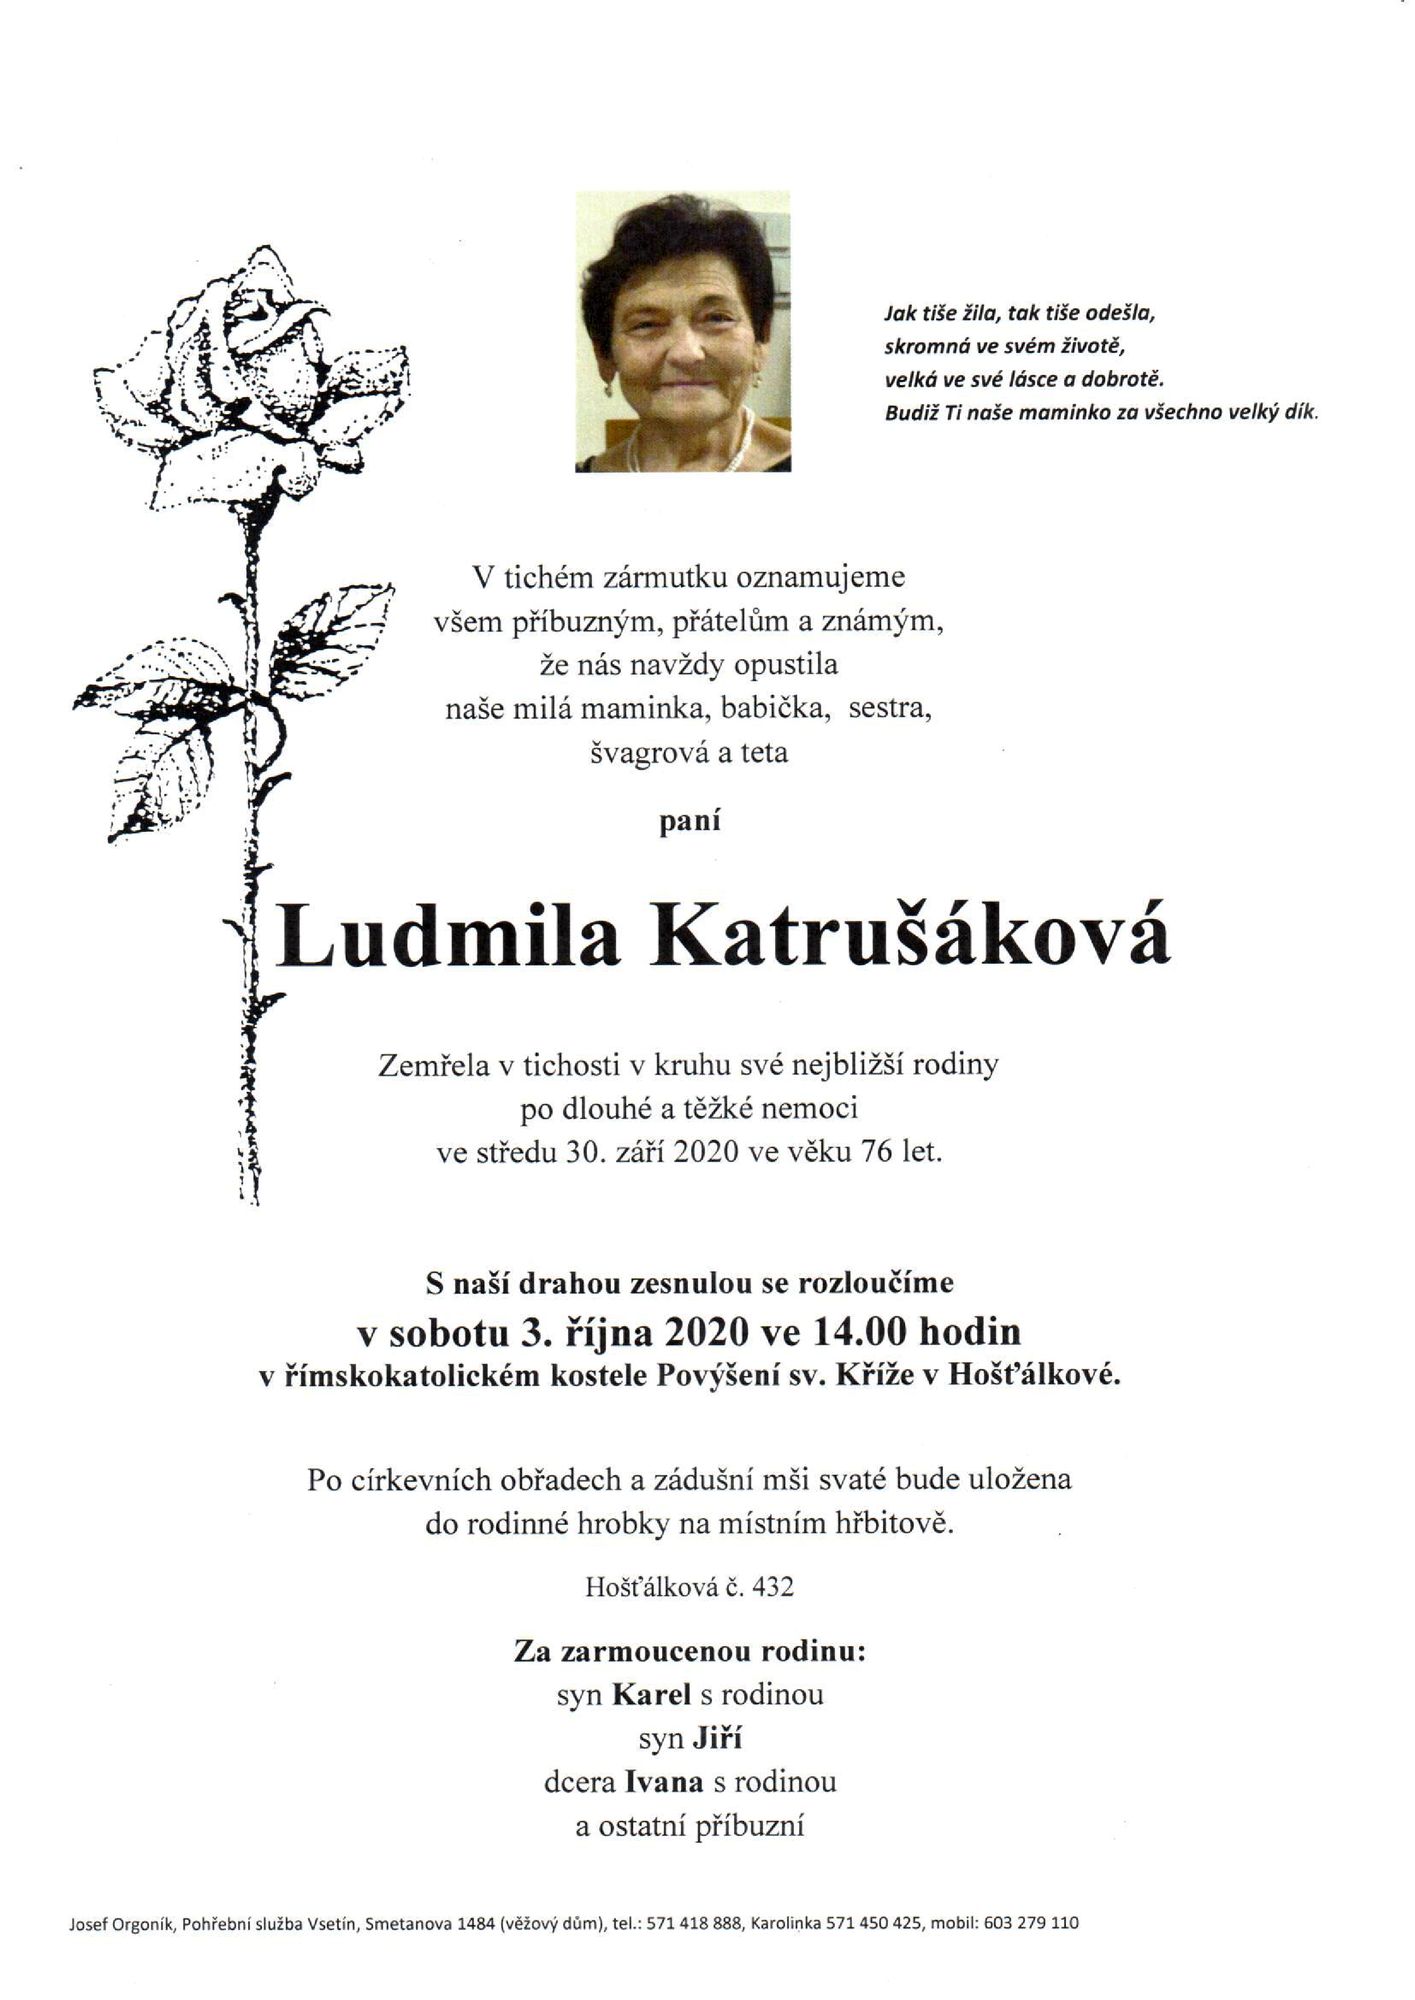 Ludmila Katrušáková